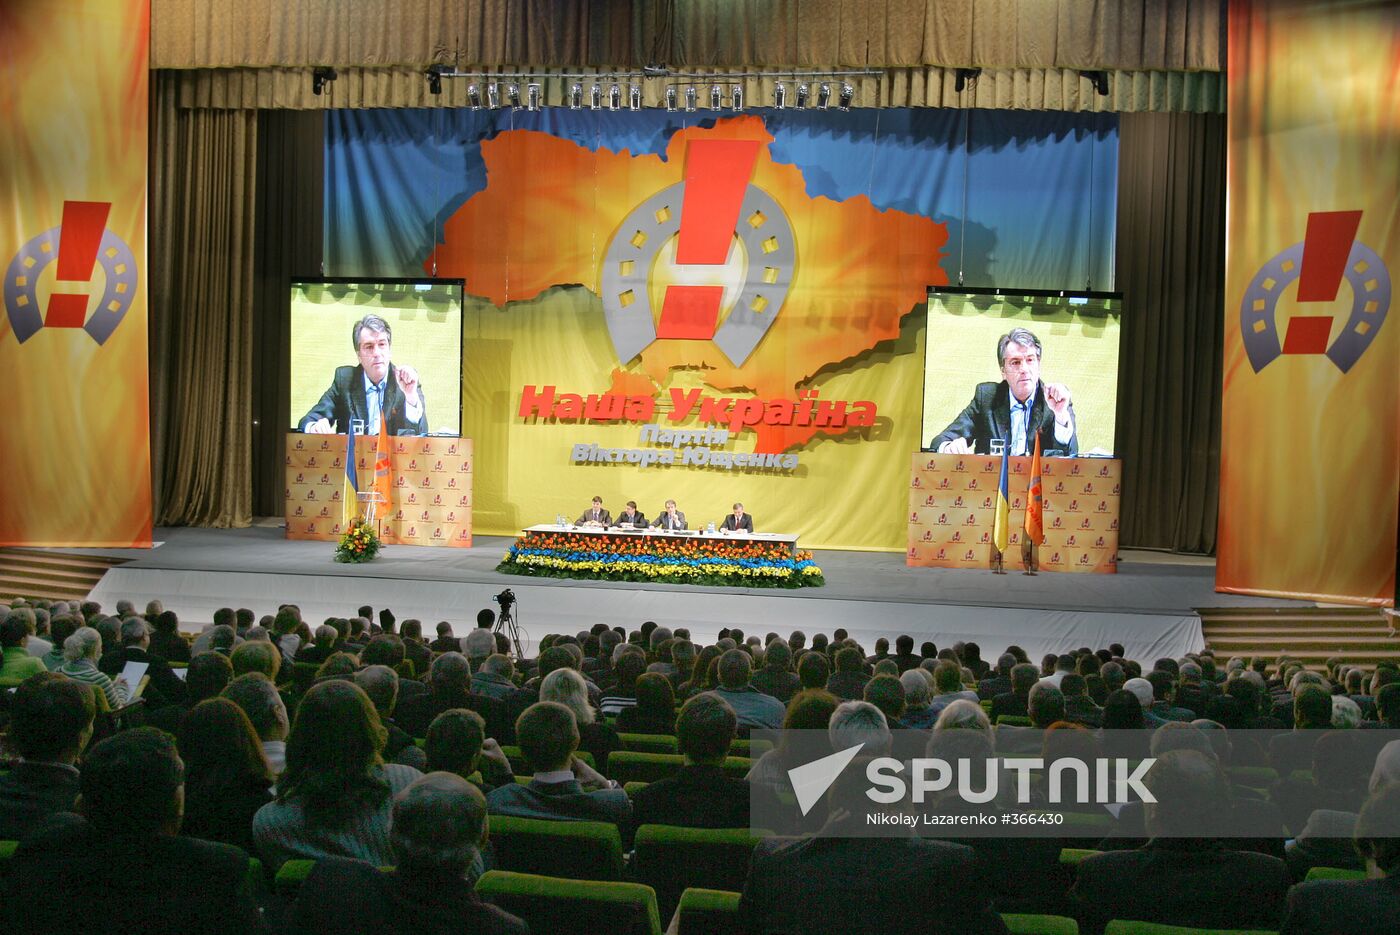 Ukrainian President Viktor Yushchenko at Our Ukraine meeting